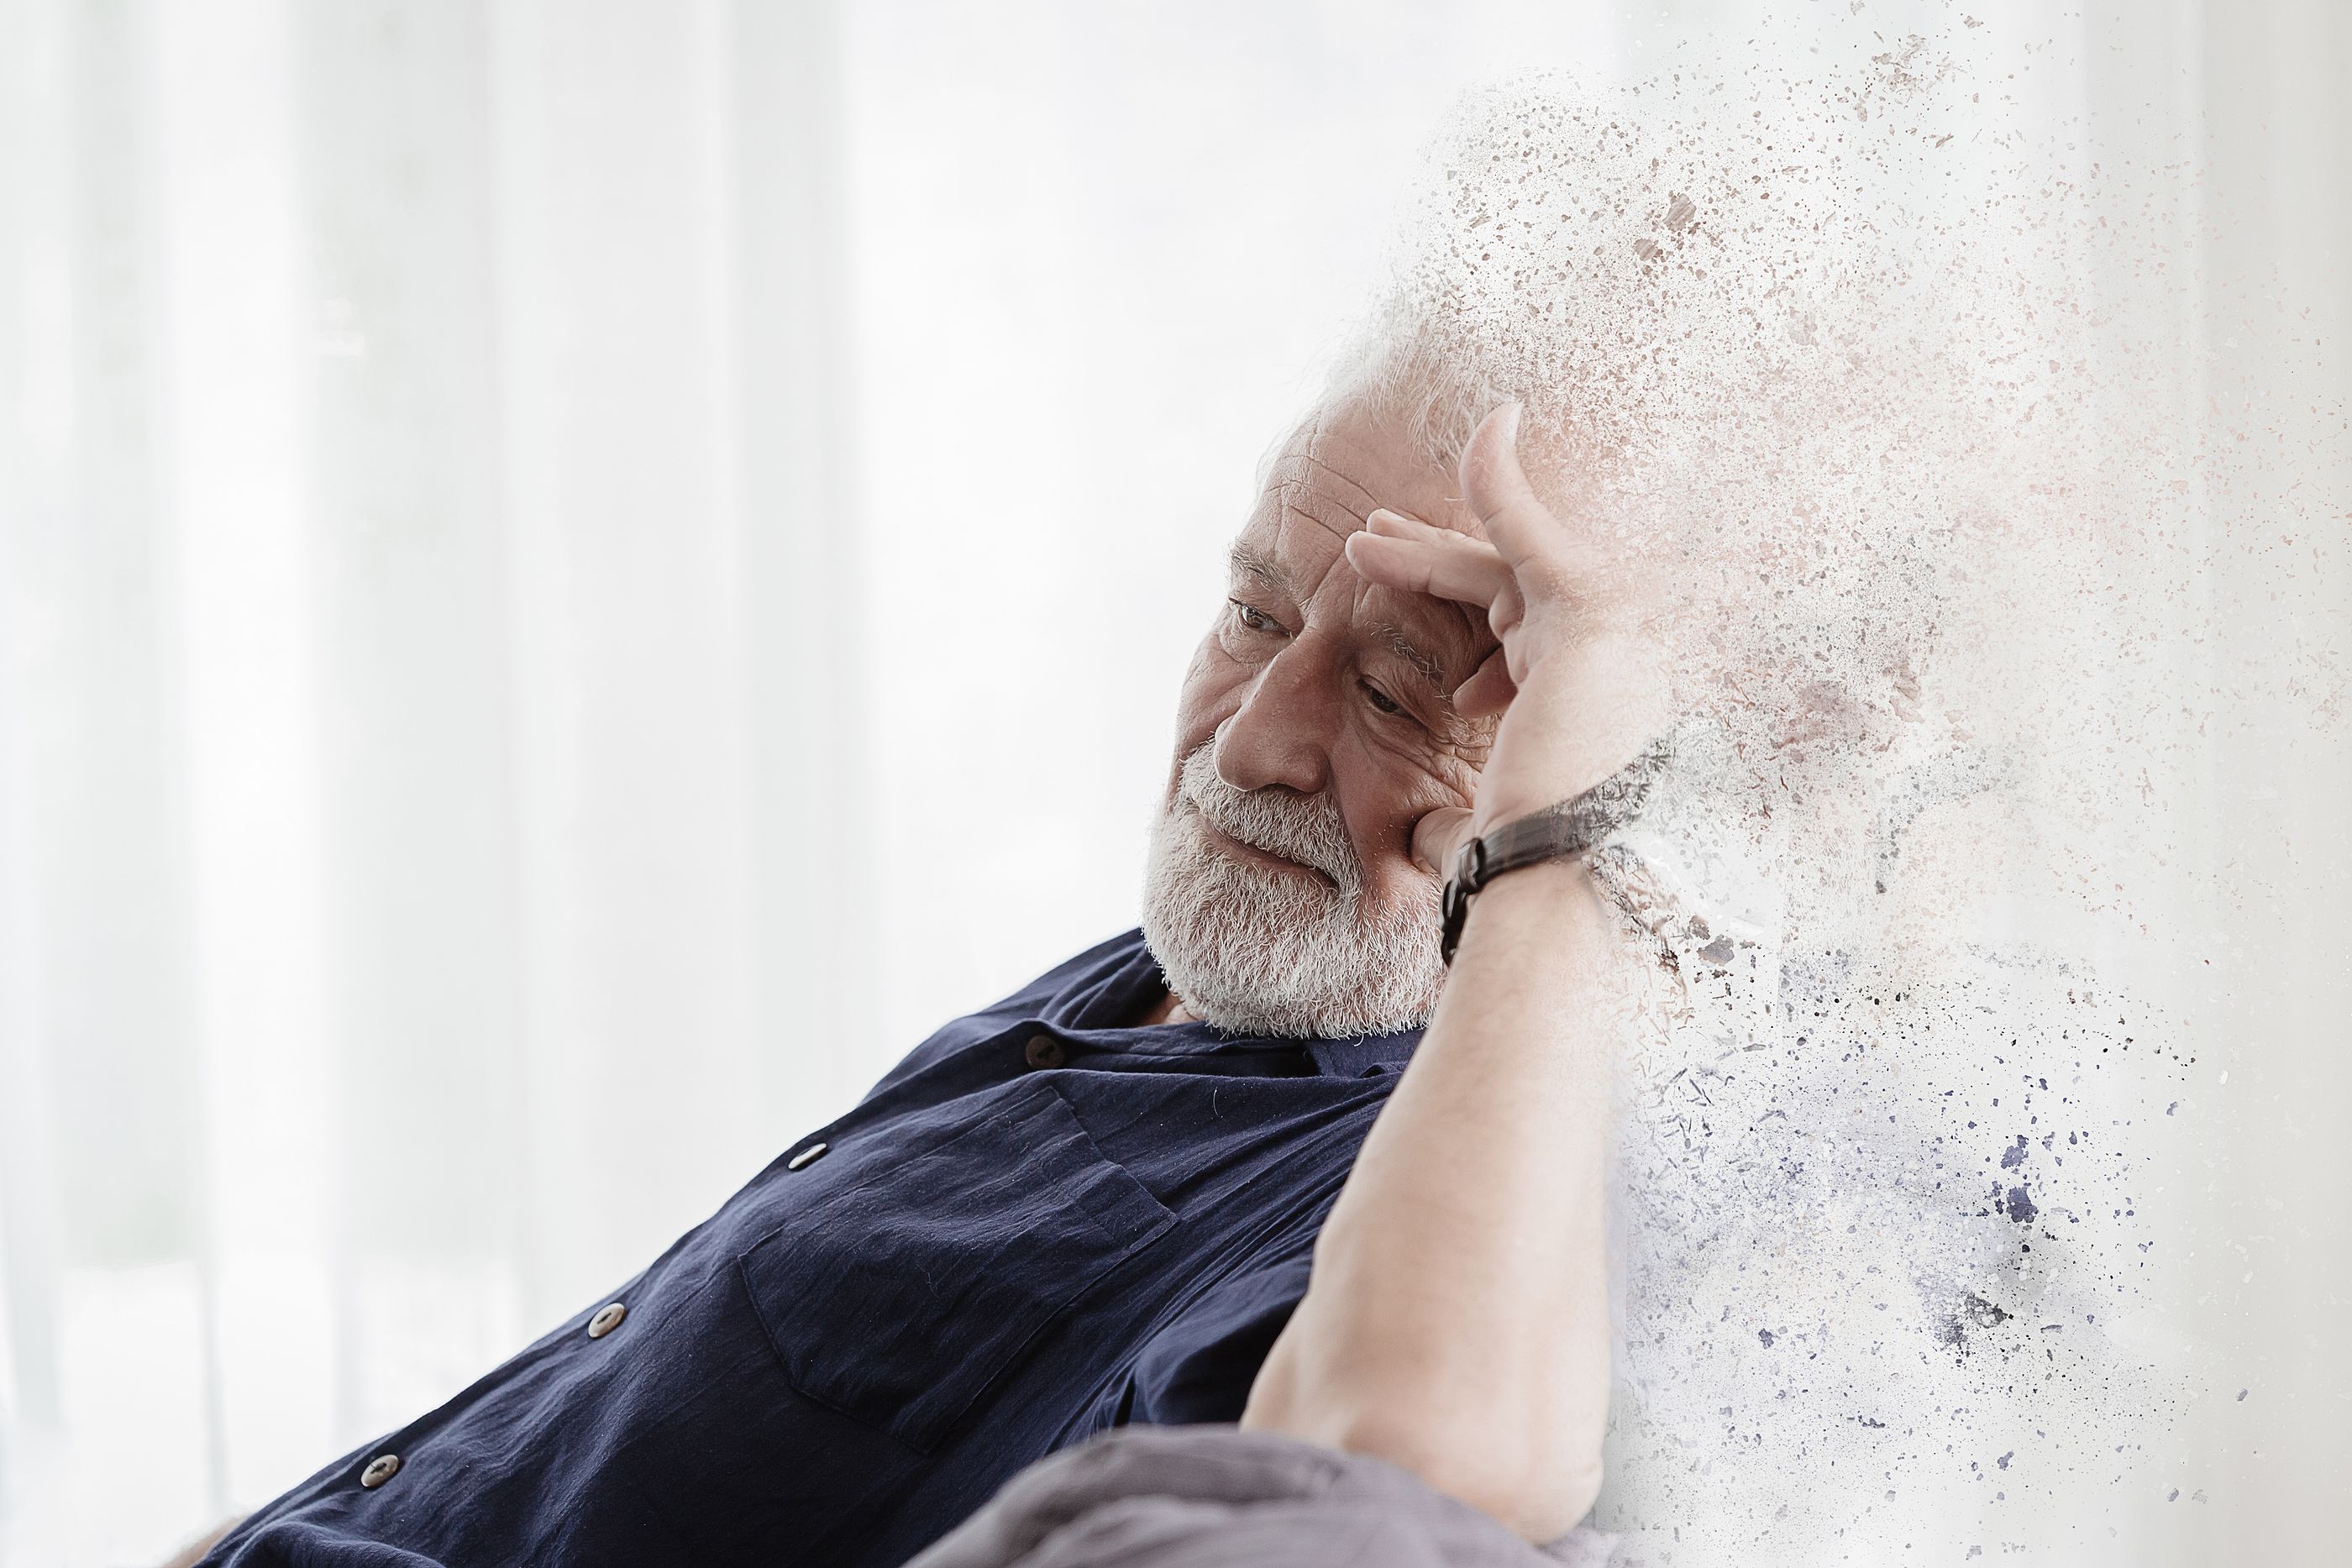 Investigadores muestran una relación entre la composición de saliva y tener alzhéimer